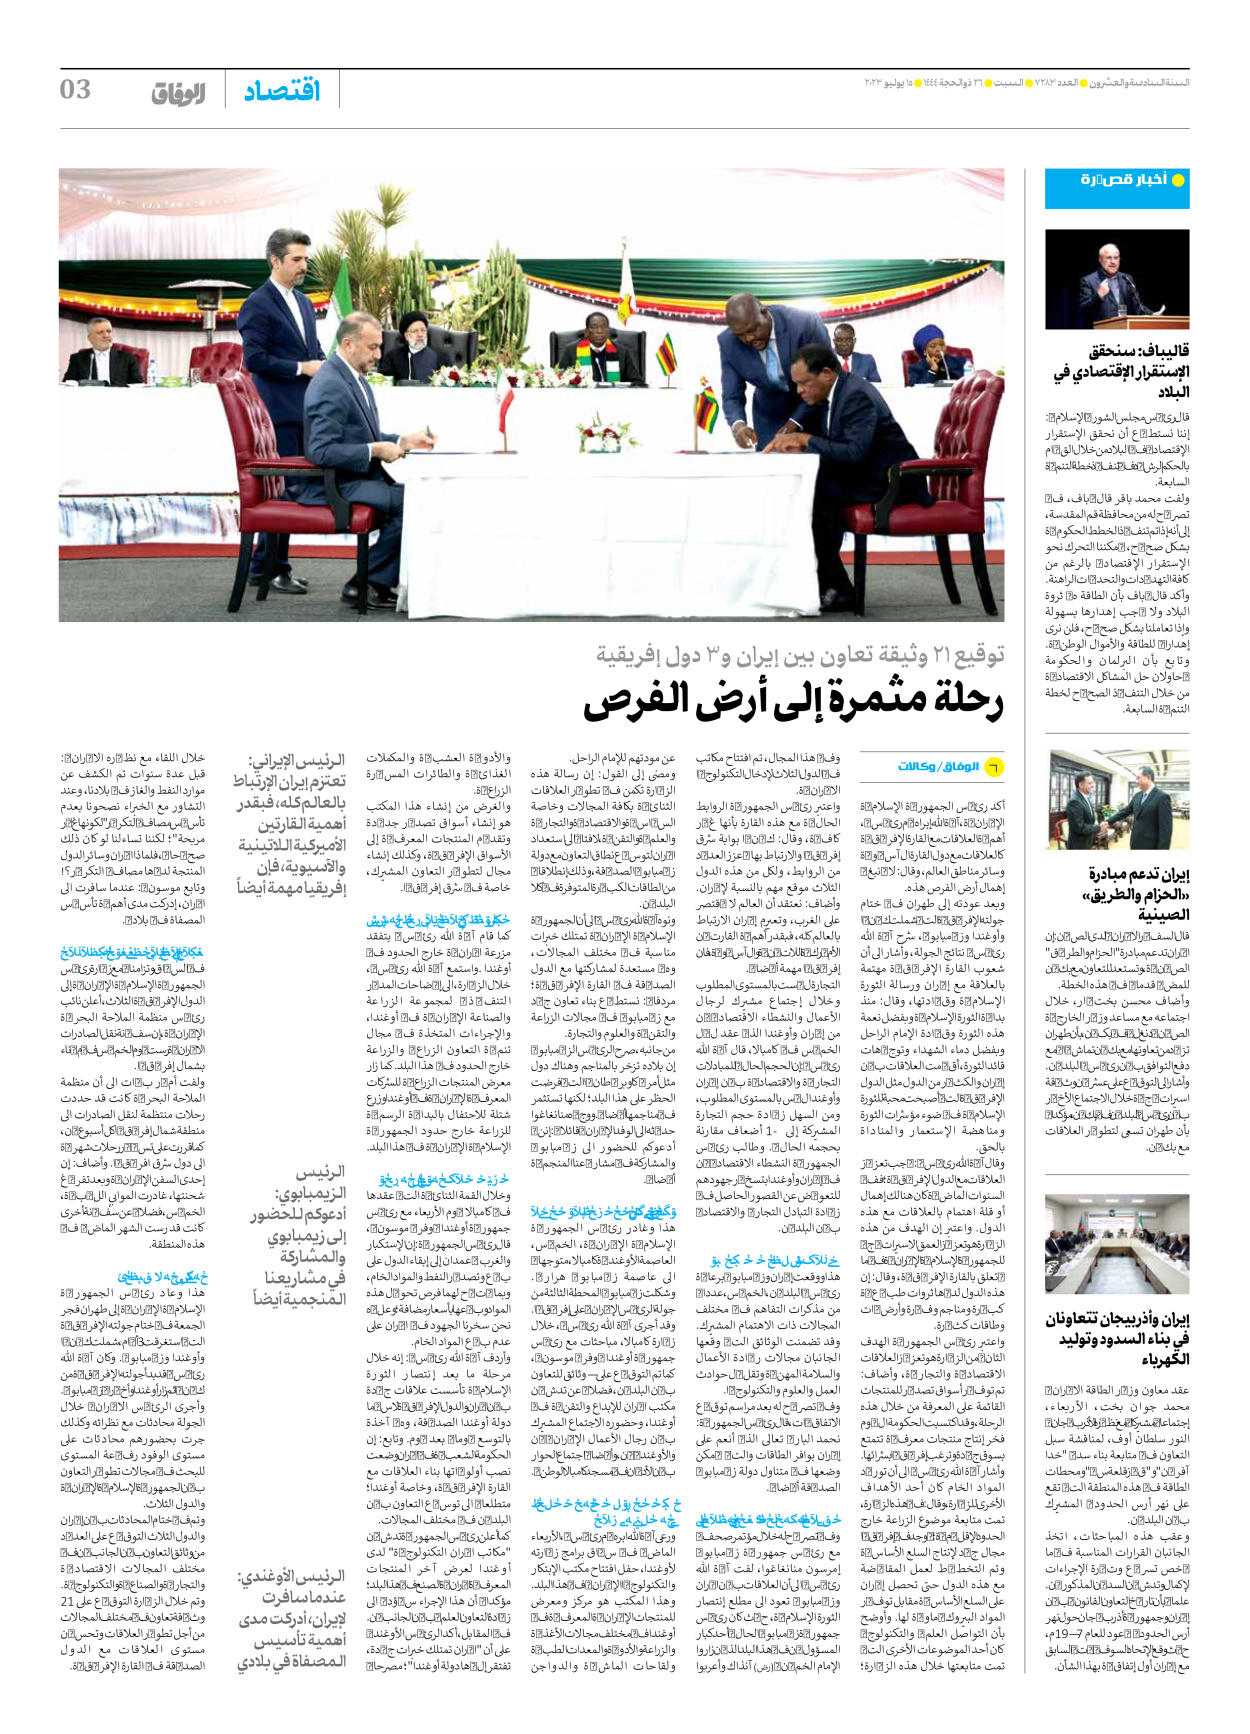 صحیفة ایران الدولیة الوفاق - العدد سبعة آلاف ومائتان وثلاثة وثمانون - ١٥ يوليو ٢٠٢٣ - الصفحة ۳